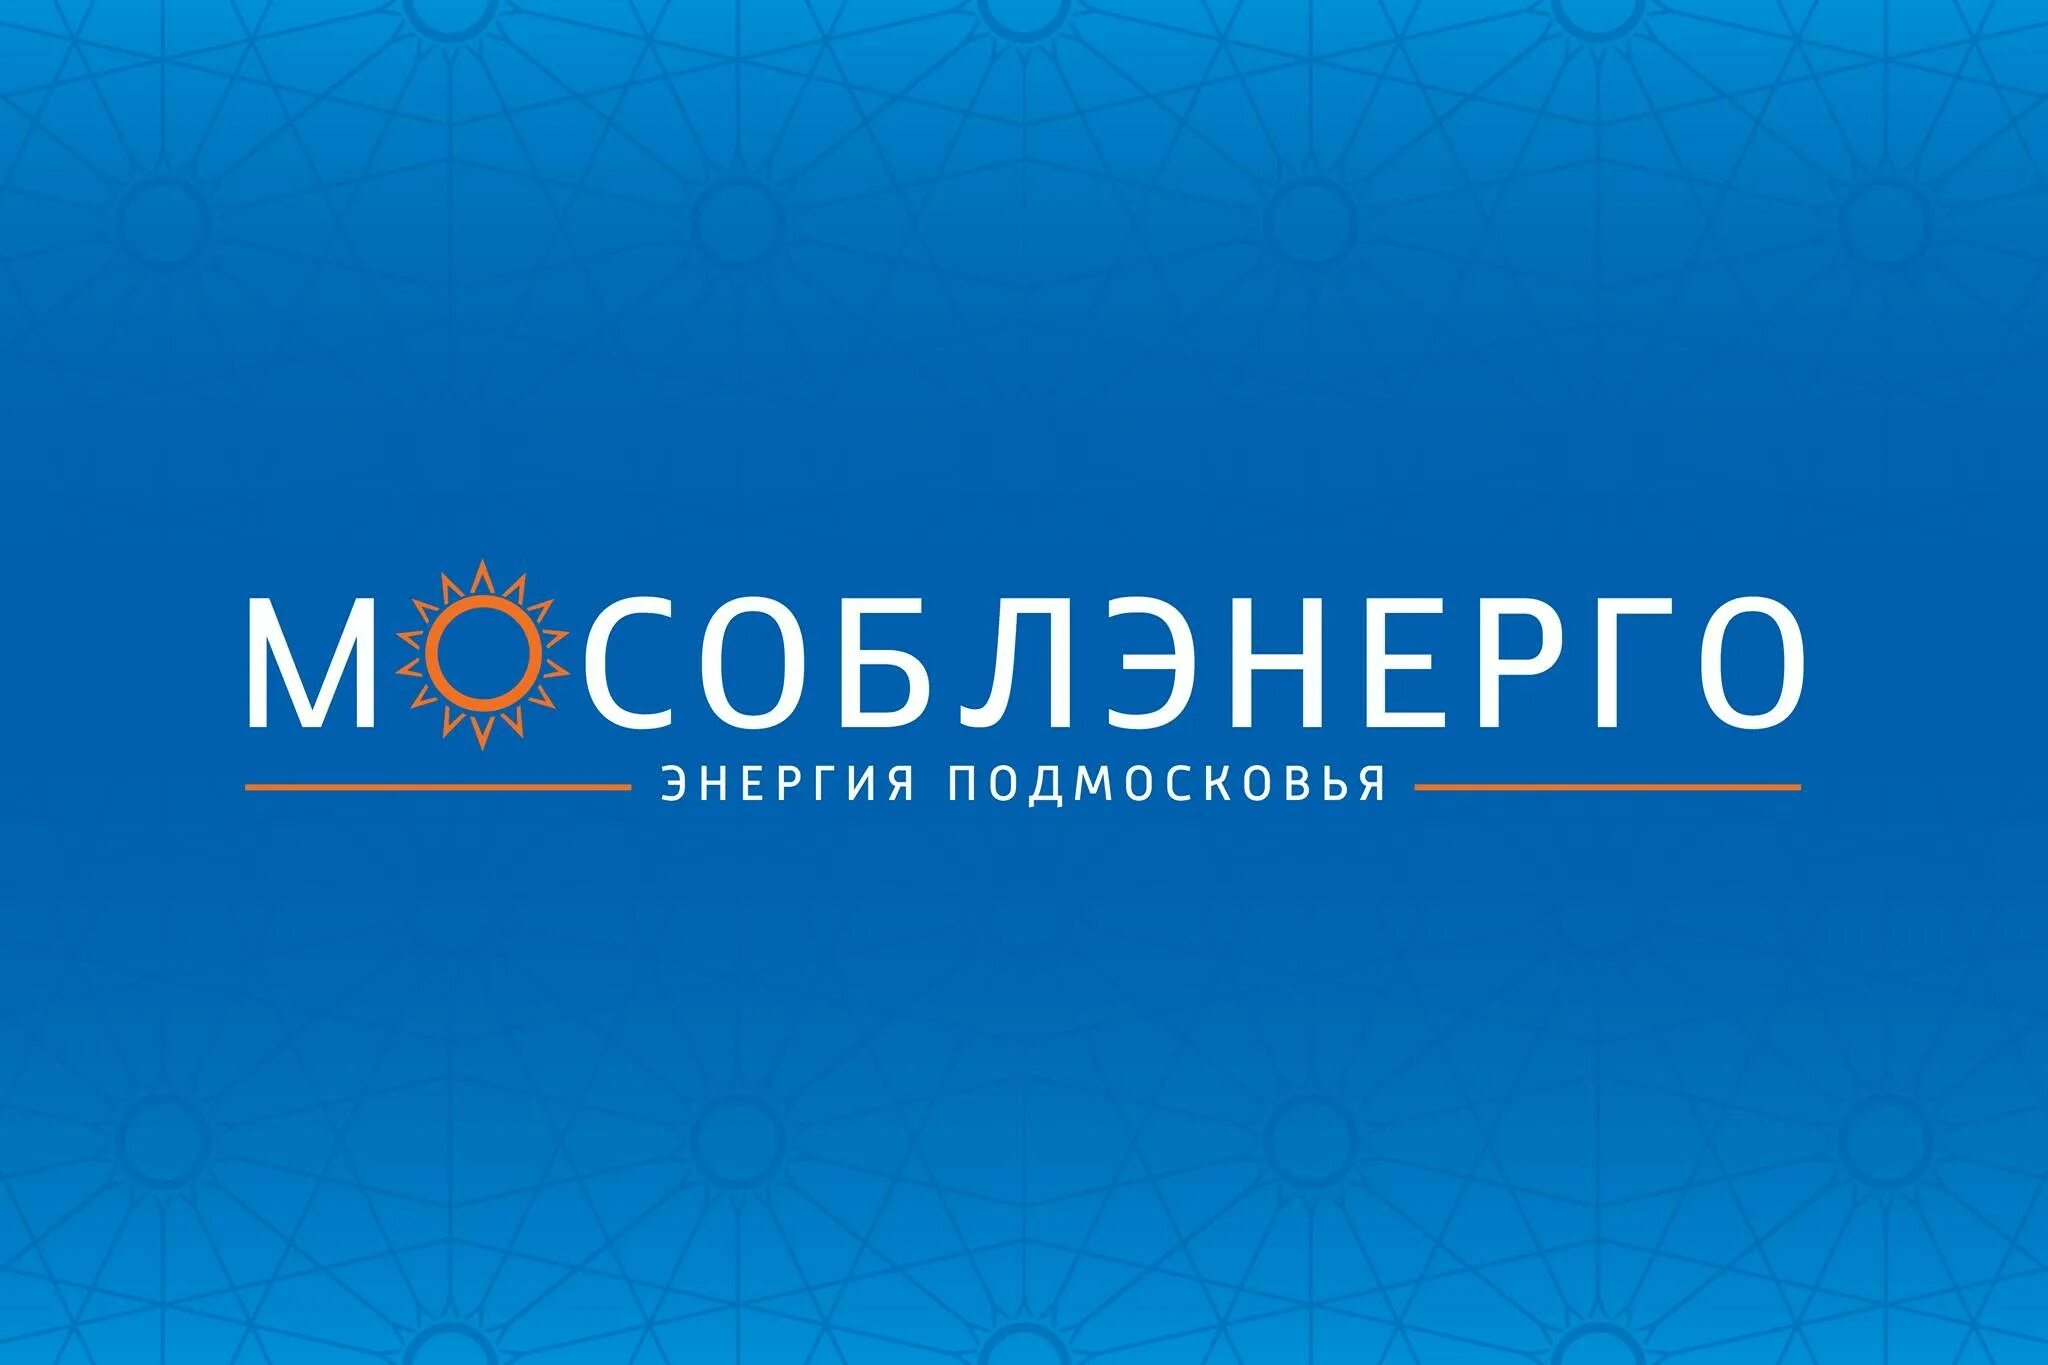 Moetp ru личный кабинет. Мособлэнерго лого. АО Мособлэнерго. АО Мособлэнерго логотип. Мособлэнерго брендбук.